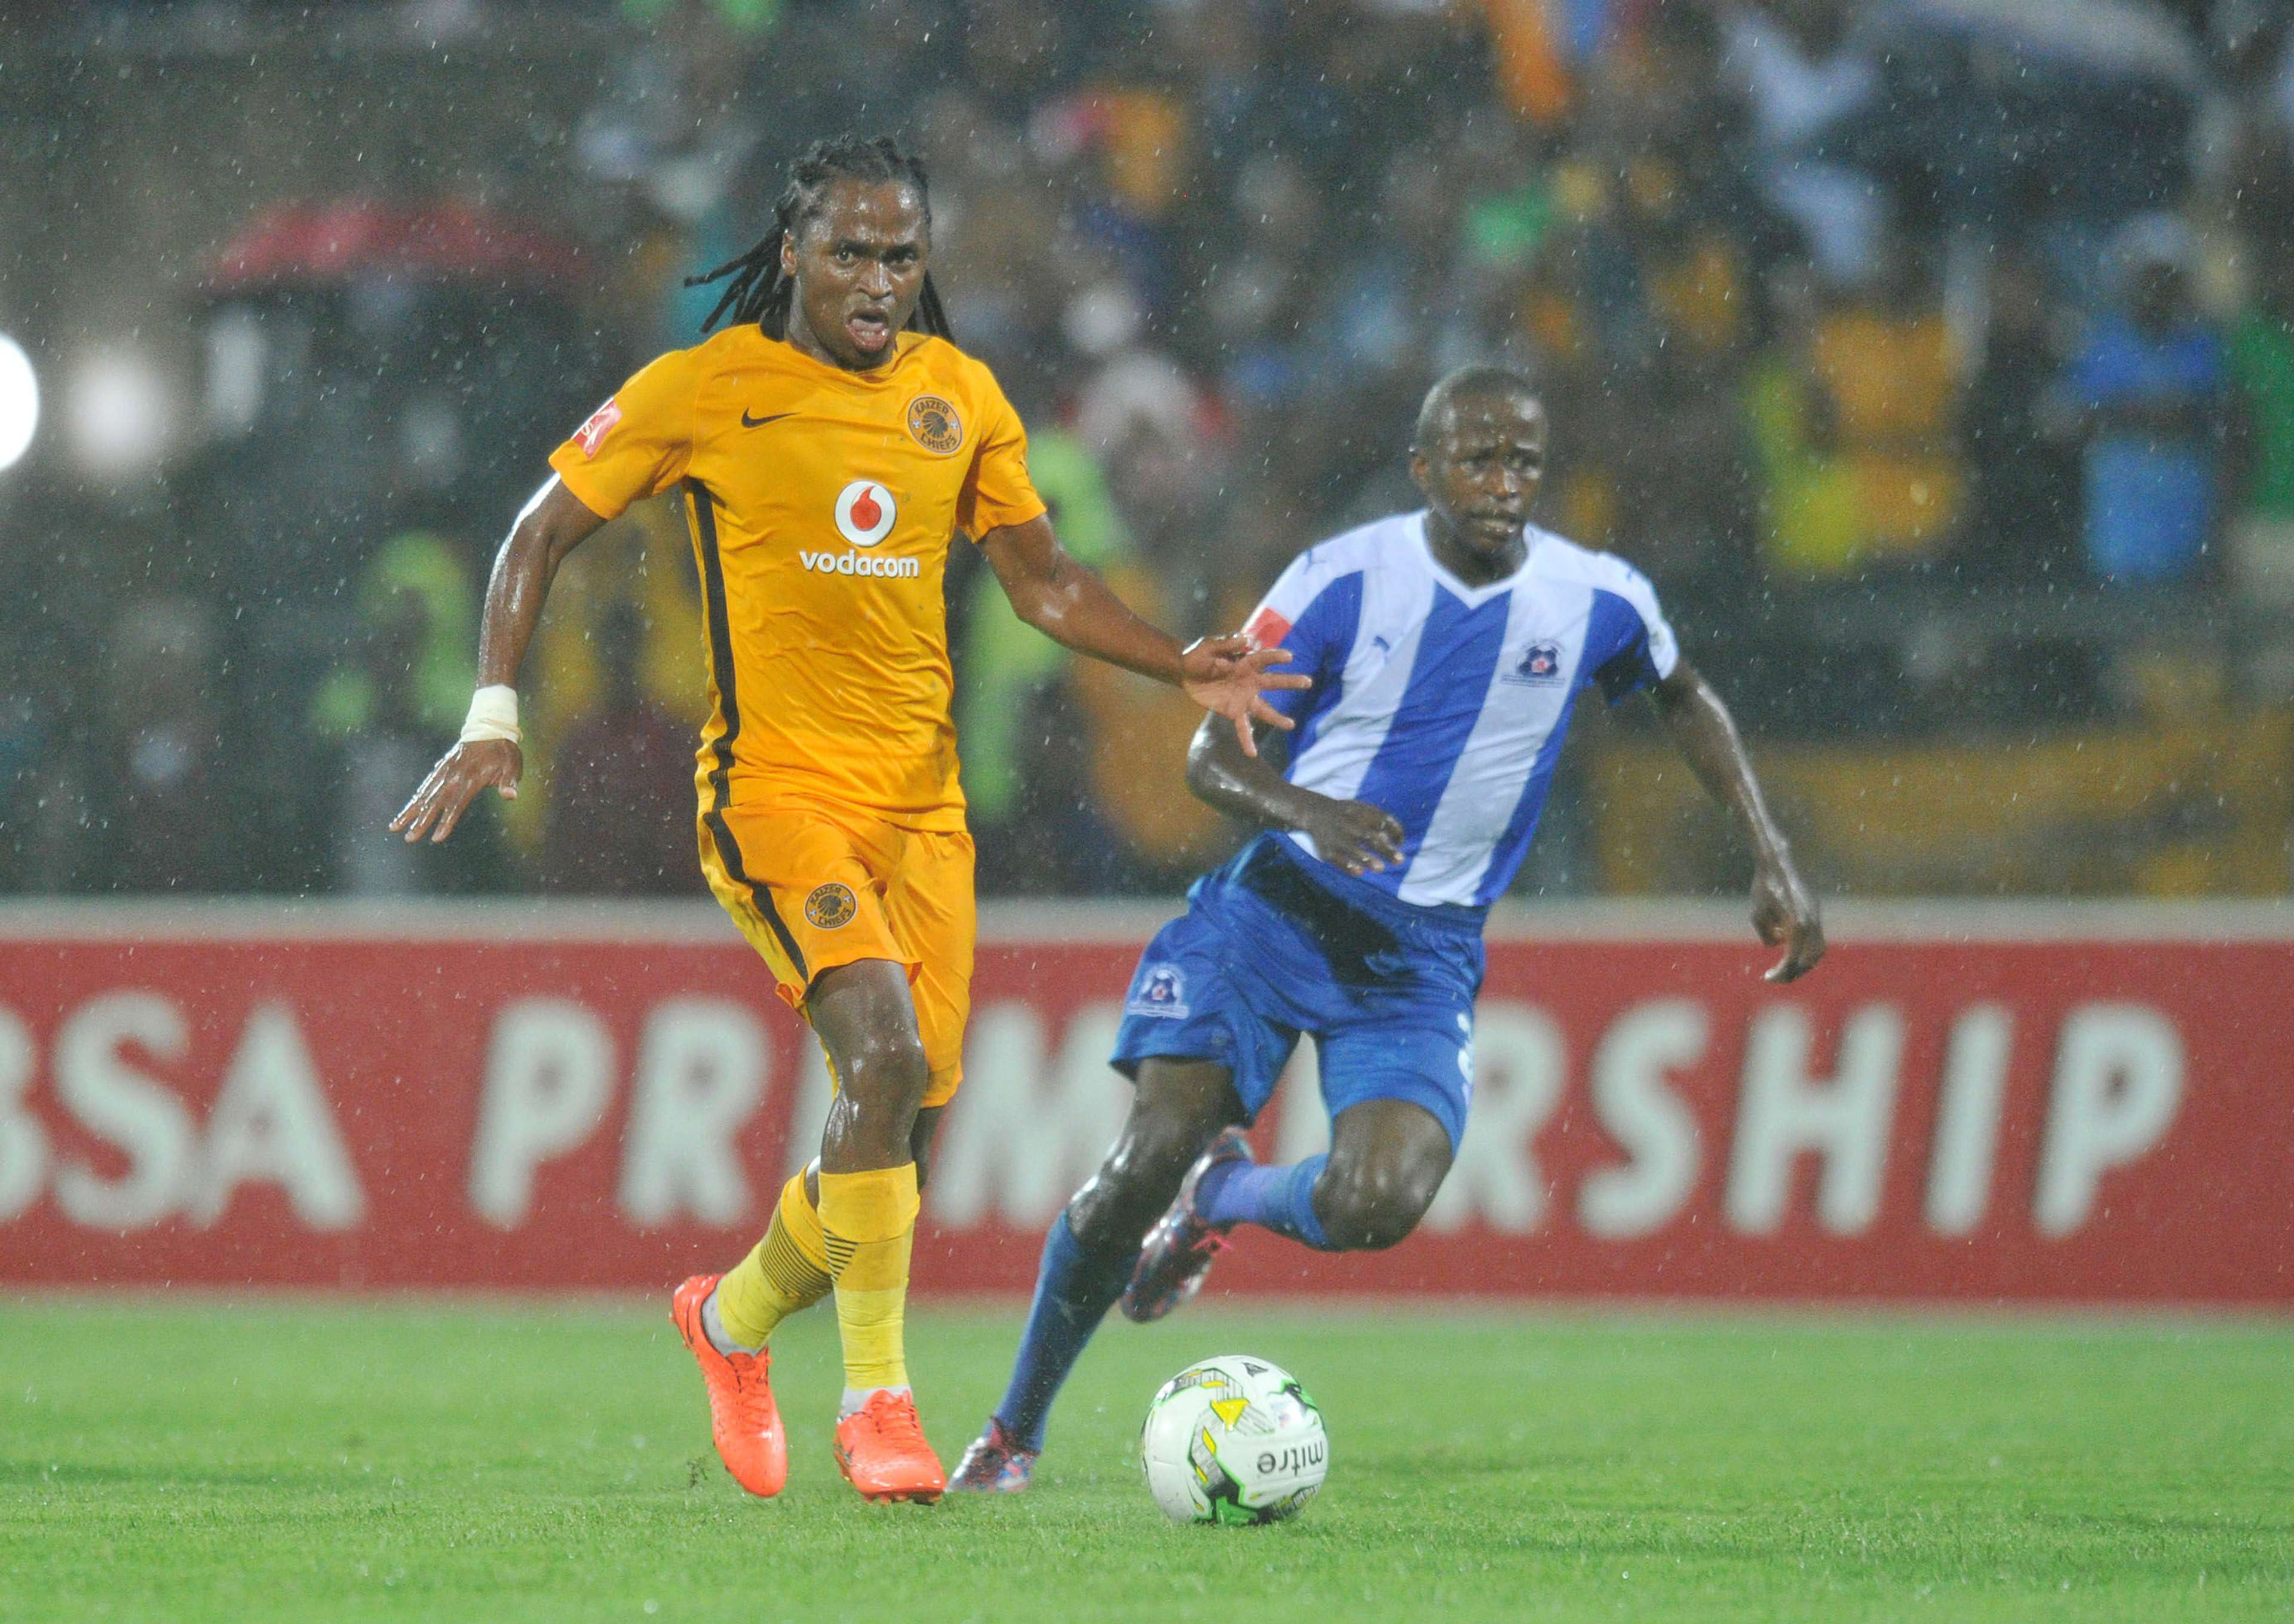 Siphiwe Tshabalala against Maritzburg United